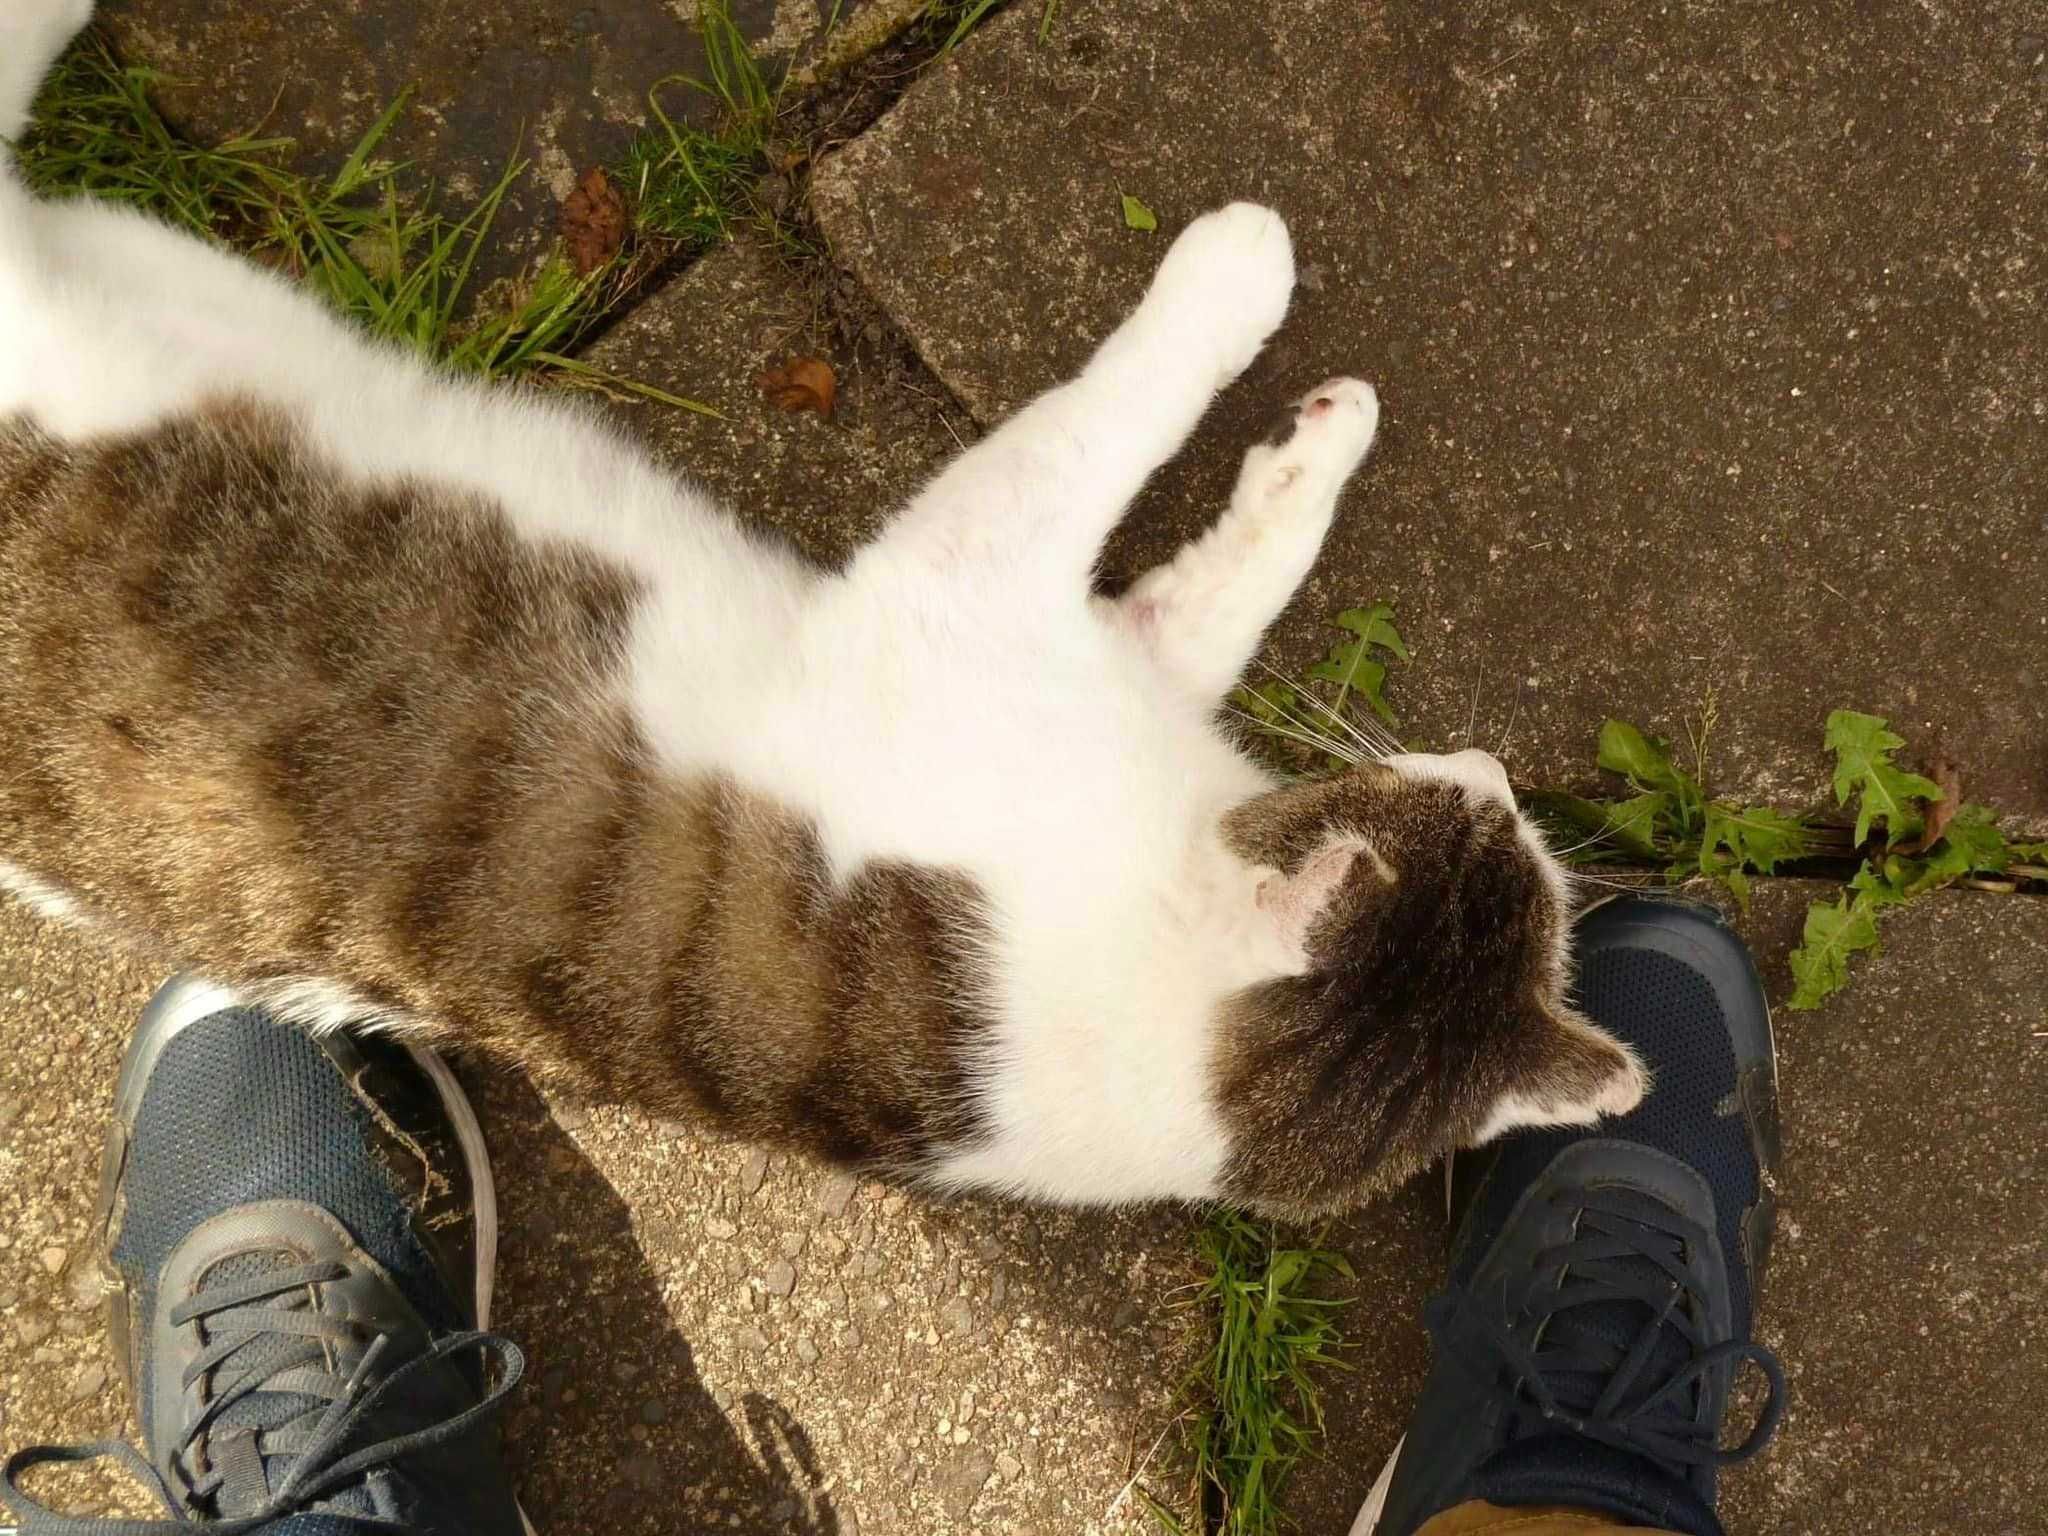 Boluś ok.2 let piękny kochany porzucony kotek szuka domu. Izabela Piet